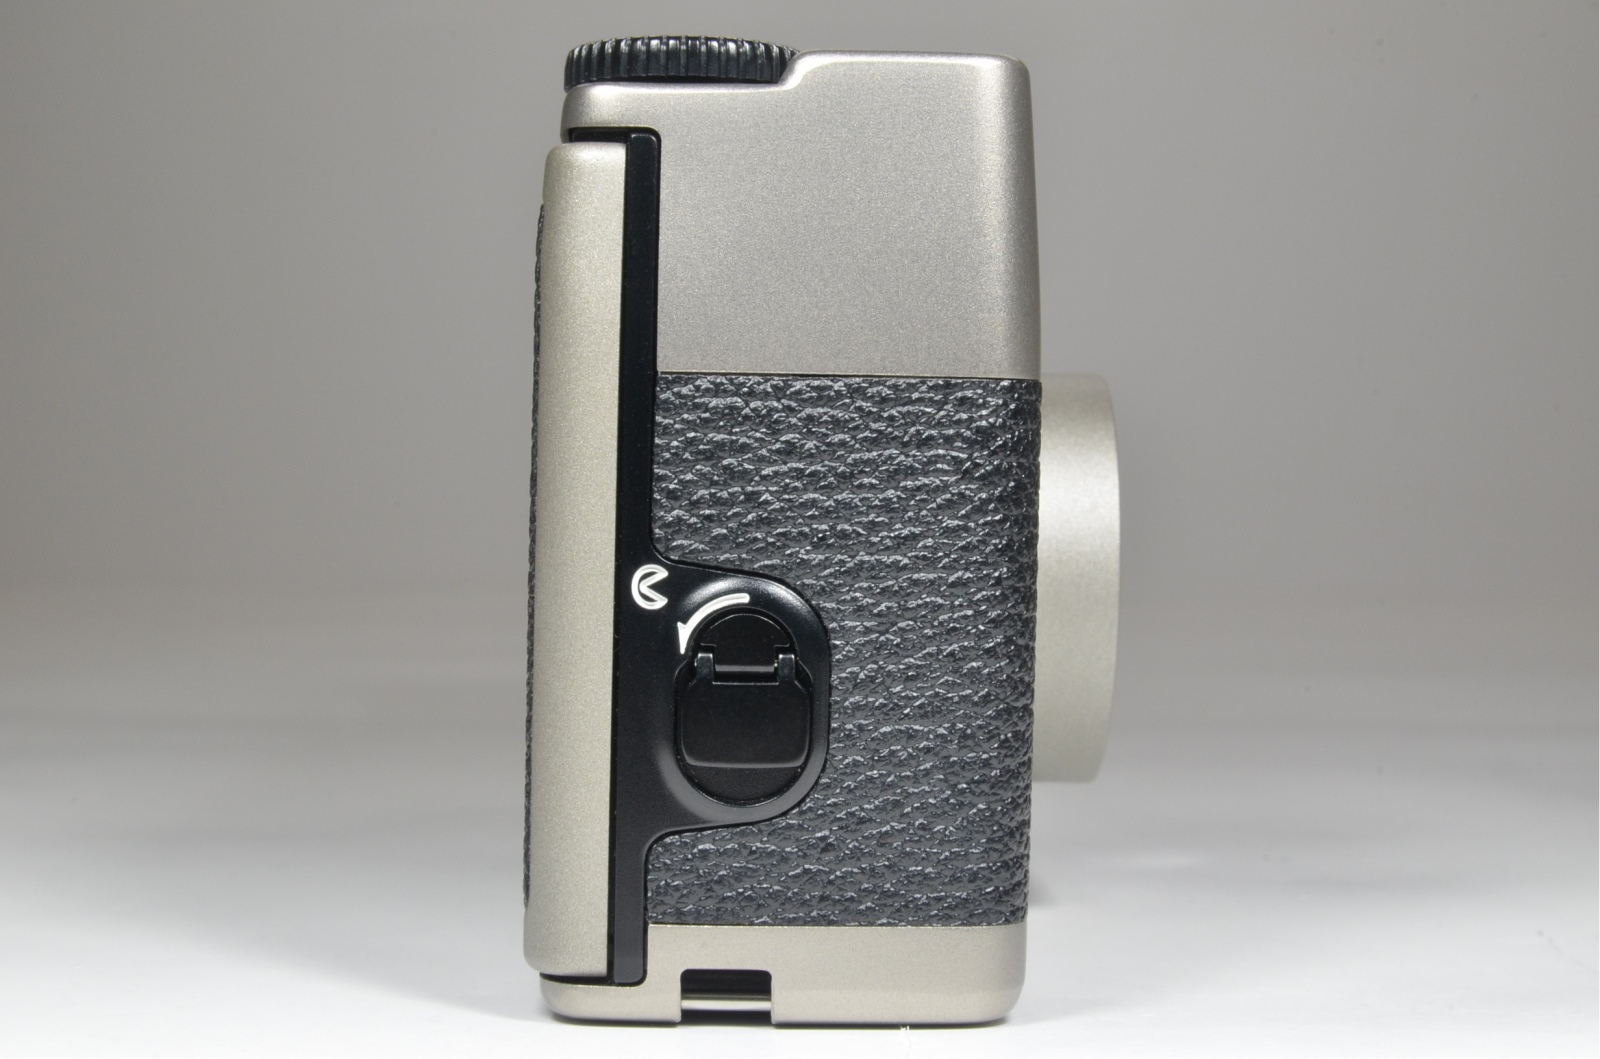 nikon 35ti point & shoot 35mm film camera 35mm f2.8 rare! 'unused' top mint